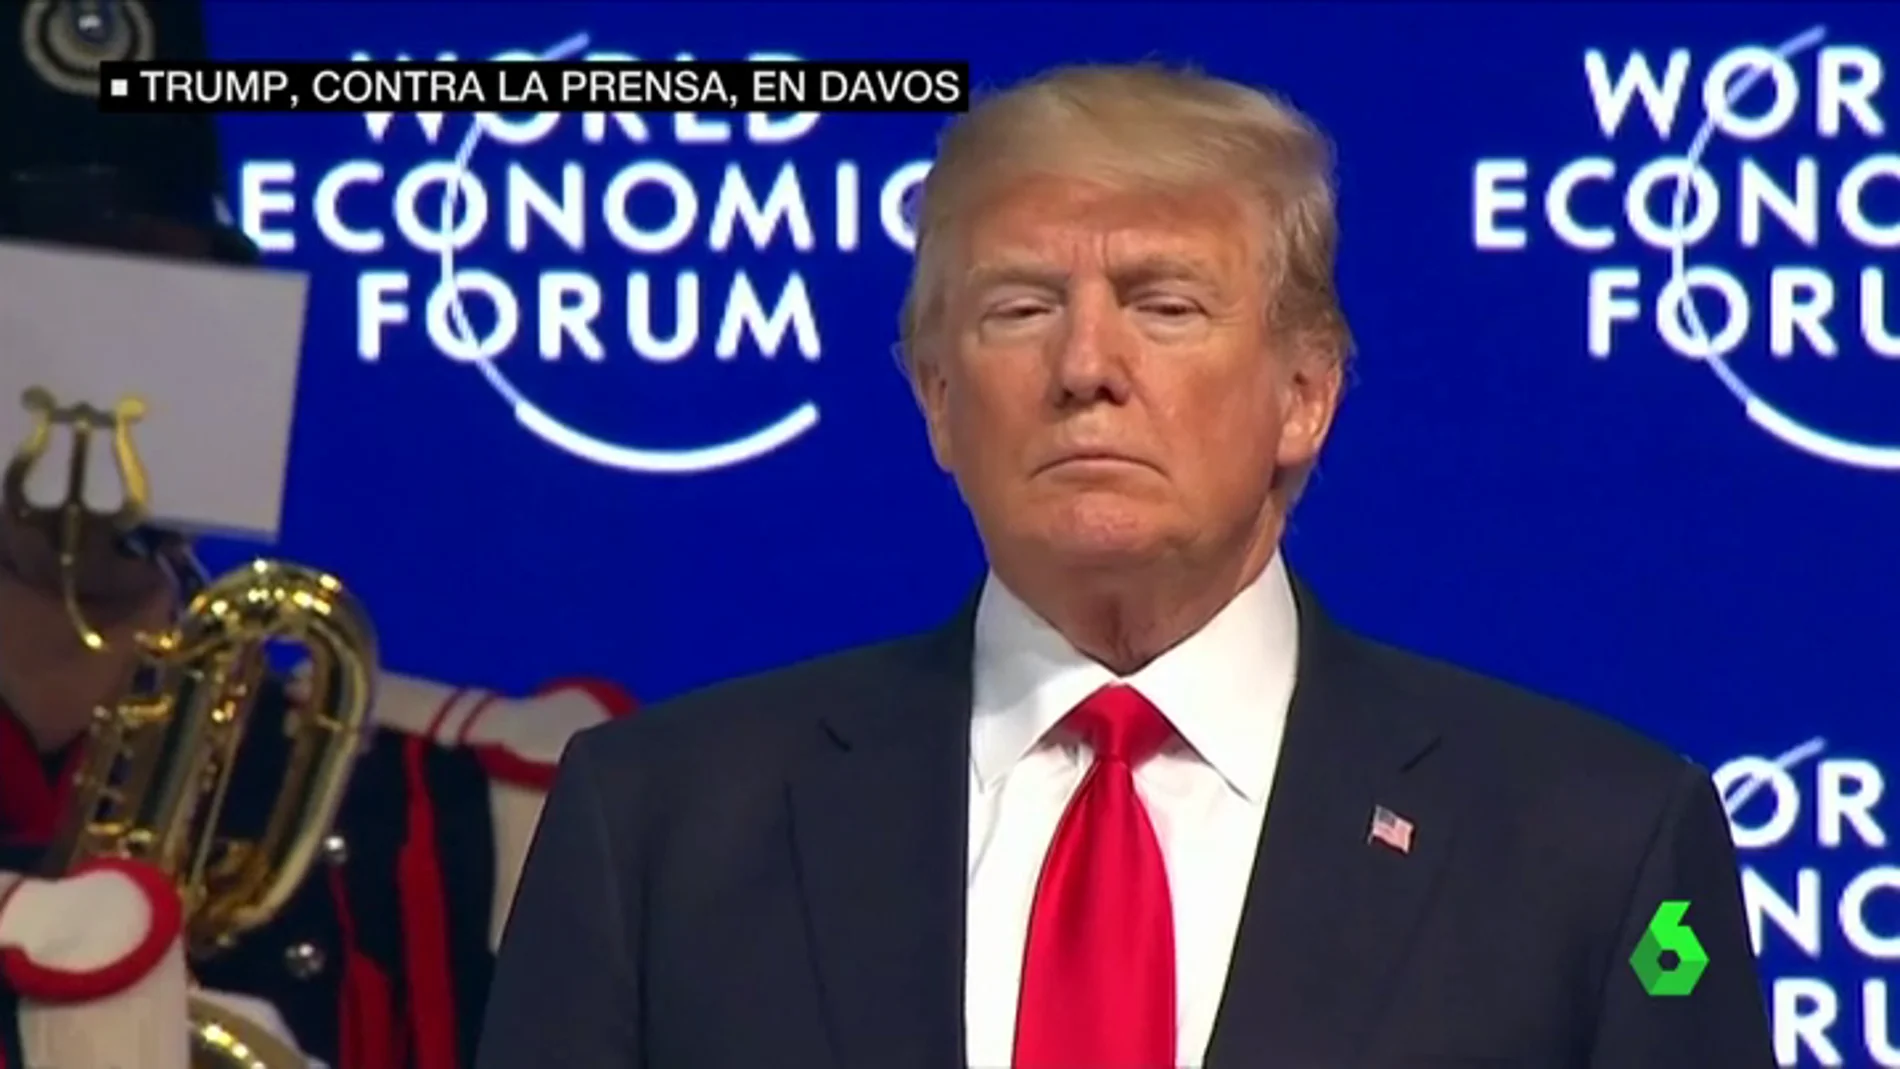 Donald Trump en su visita a Davos